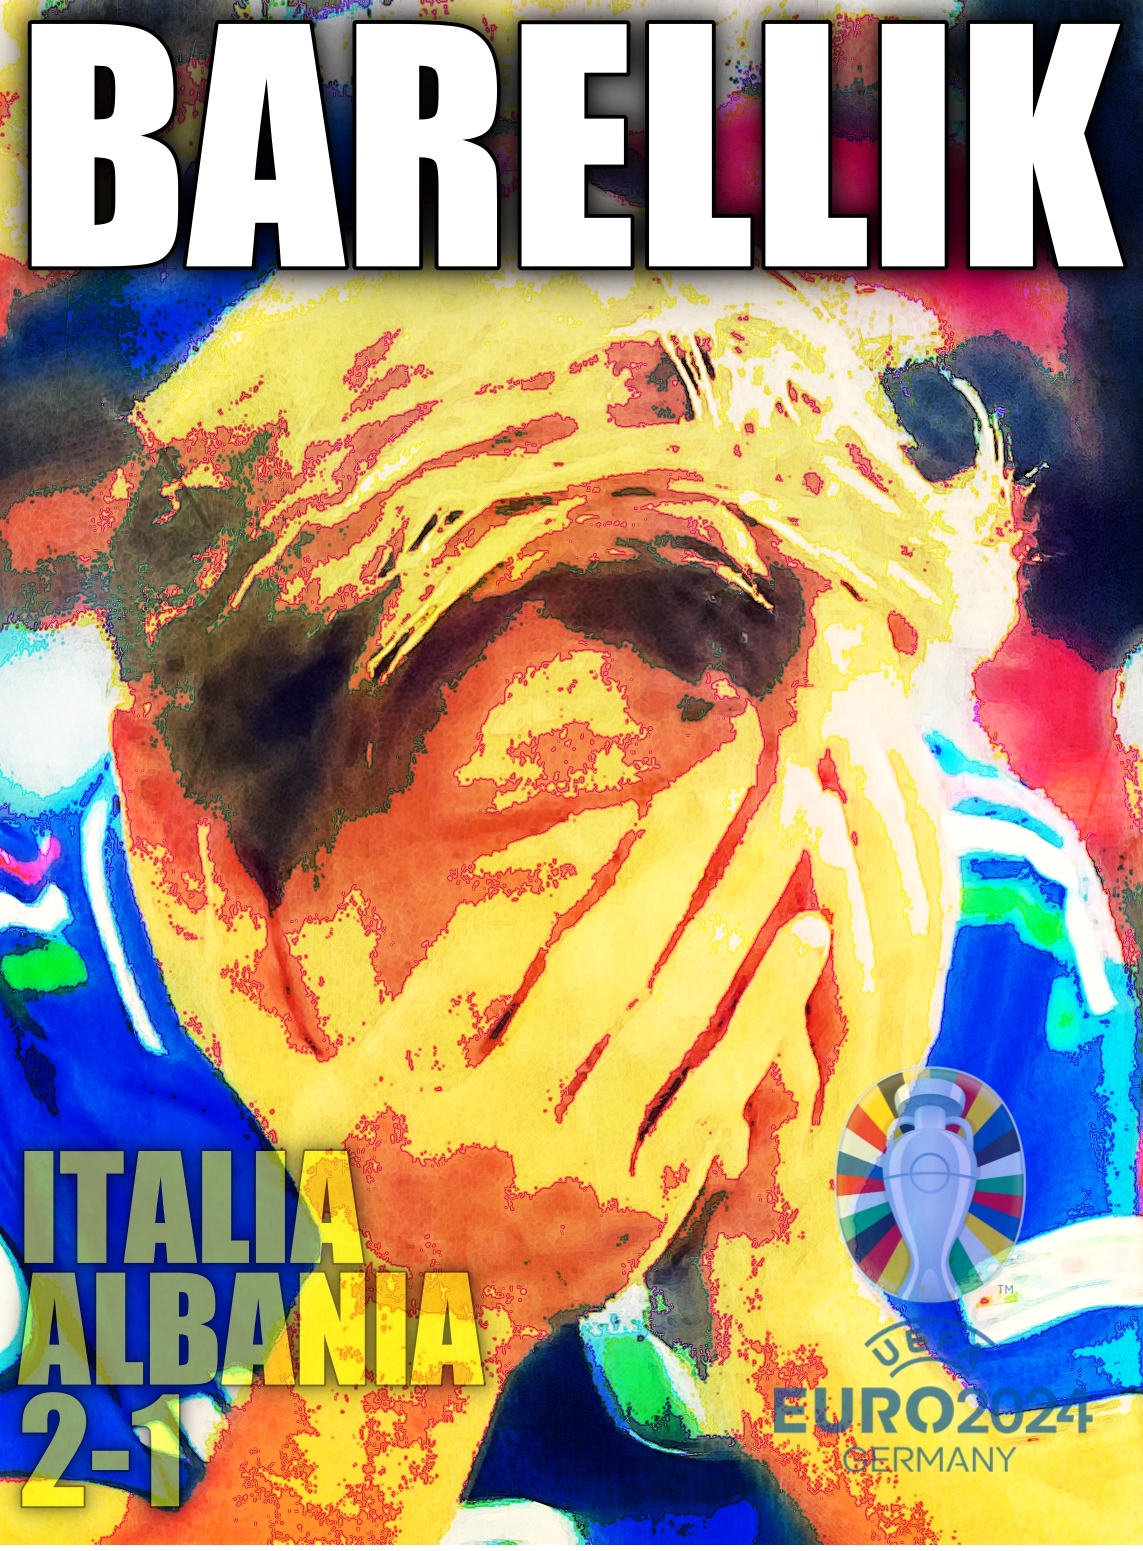 Germania 2024, Italia-Albania 2-1. L'Italia vince dopo essere passata in svantaggio a causa di un gol lampo degli albanesi (23"). Pareggia Bastoni, Barella segna il gol vittoria